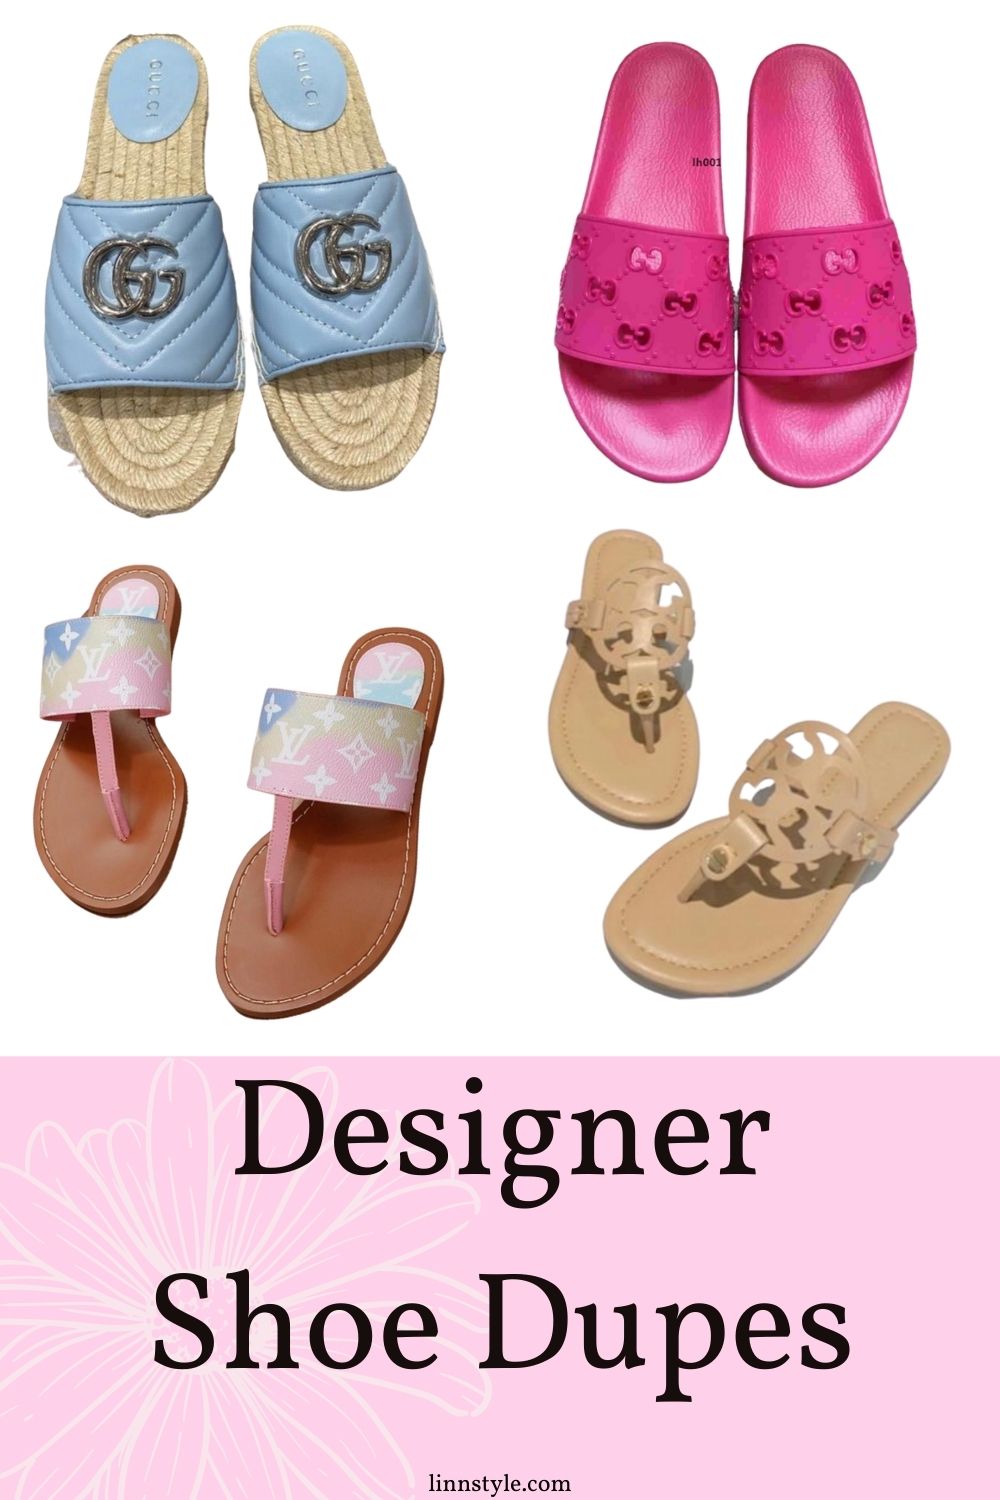 Designer Shoe Dupes | Linn Style by Jessica Linn